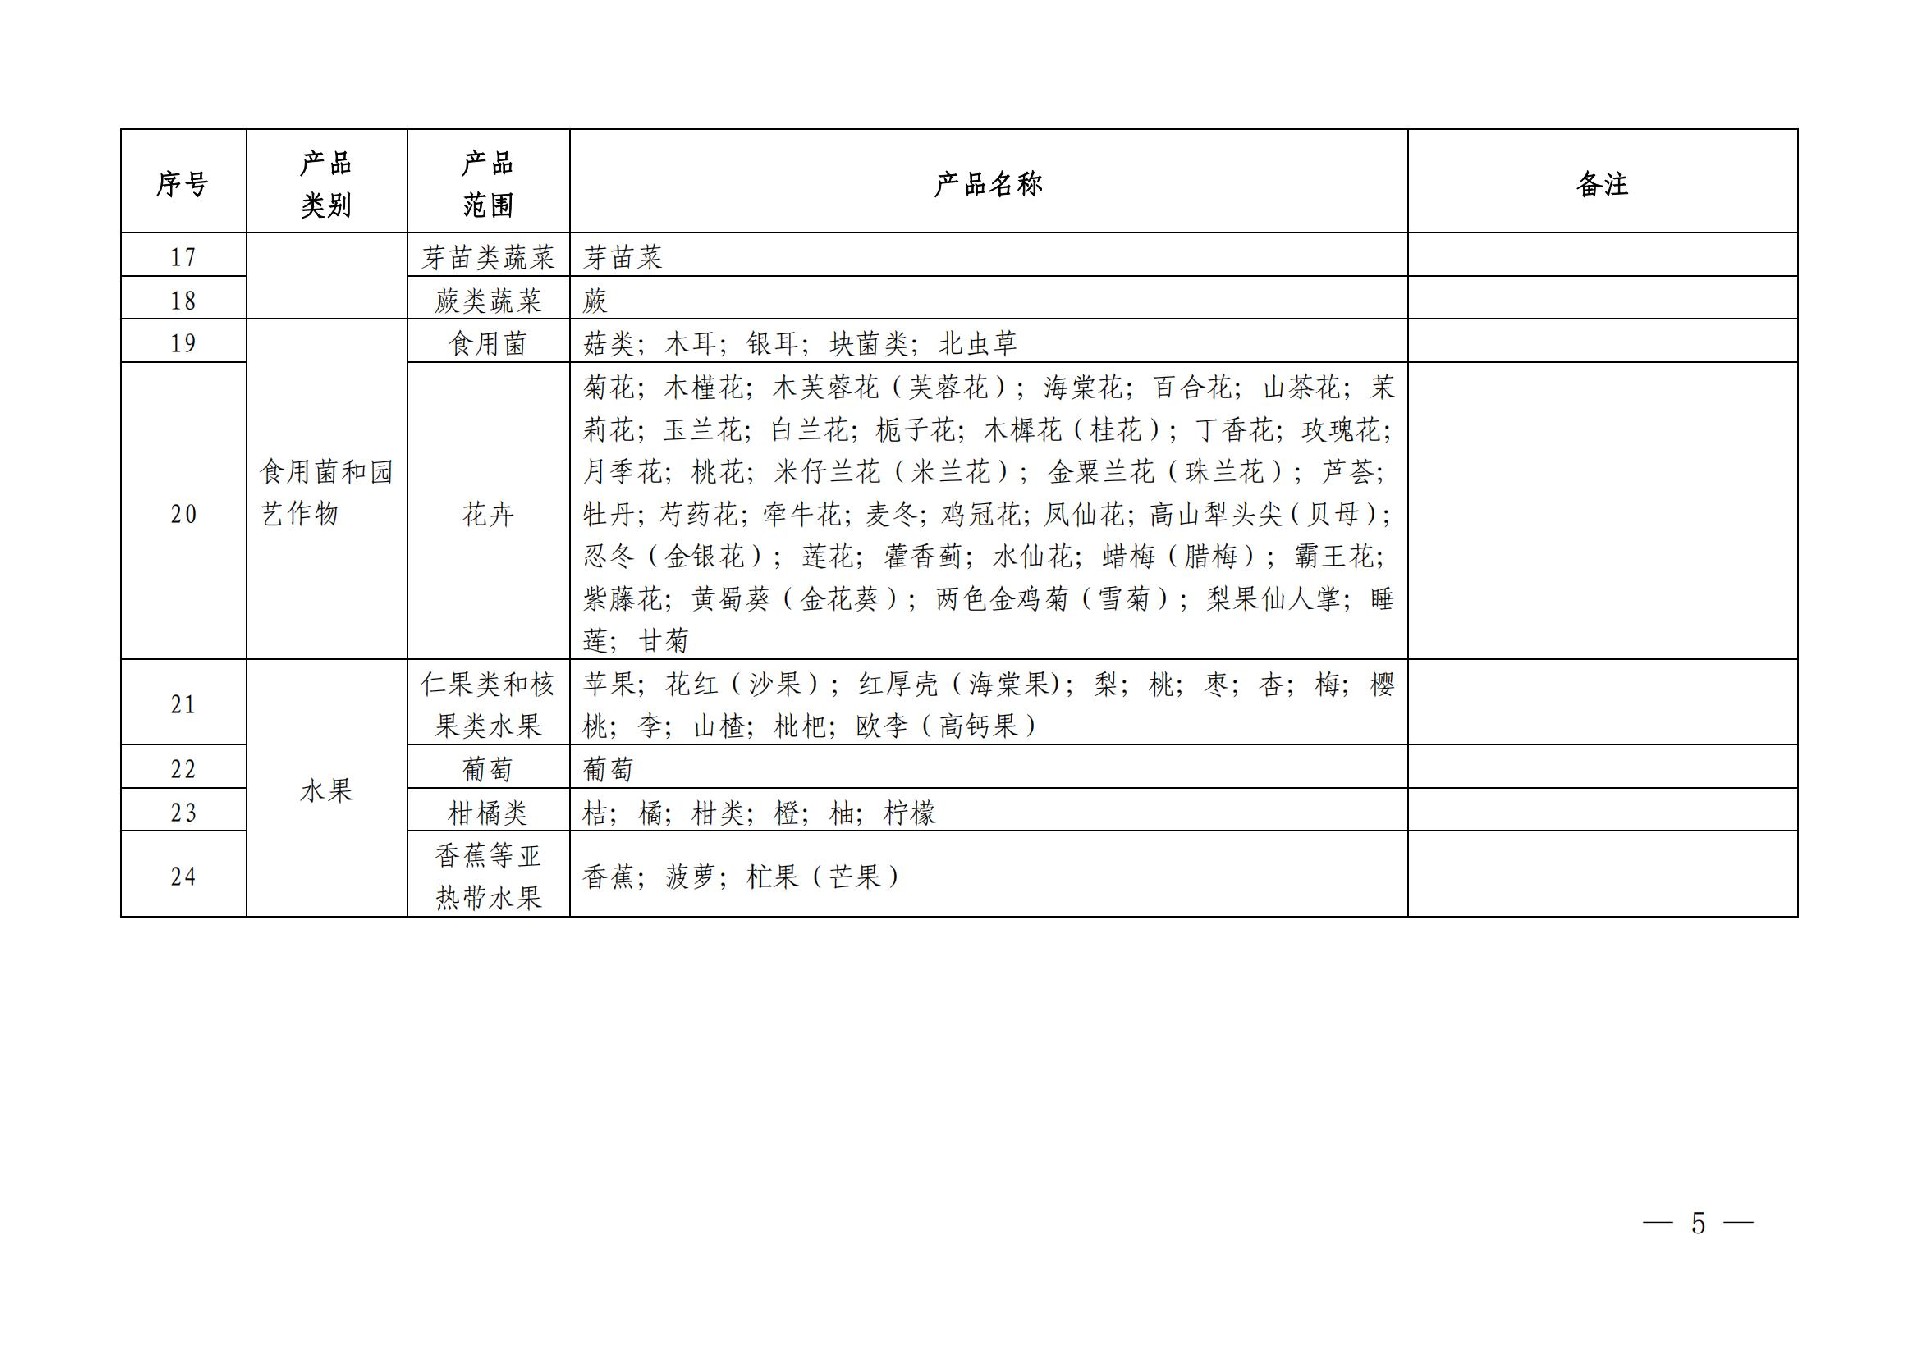 有机产品认证目录【认监委2019年第22号公告】(1)_04.jpg